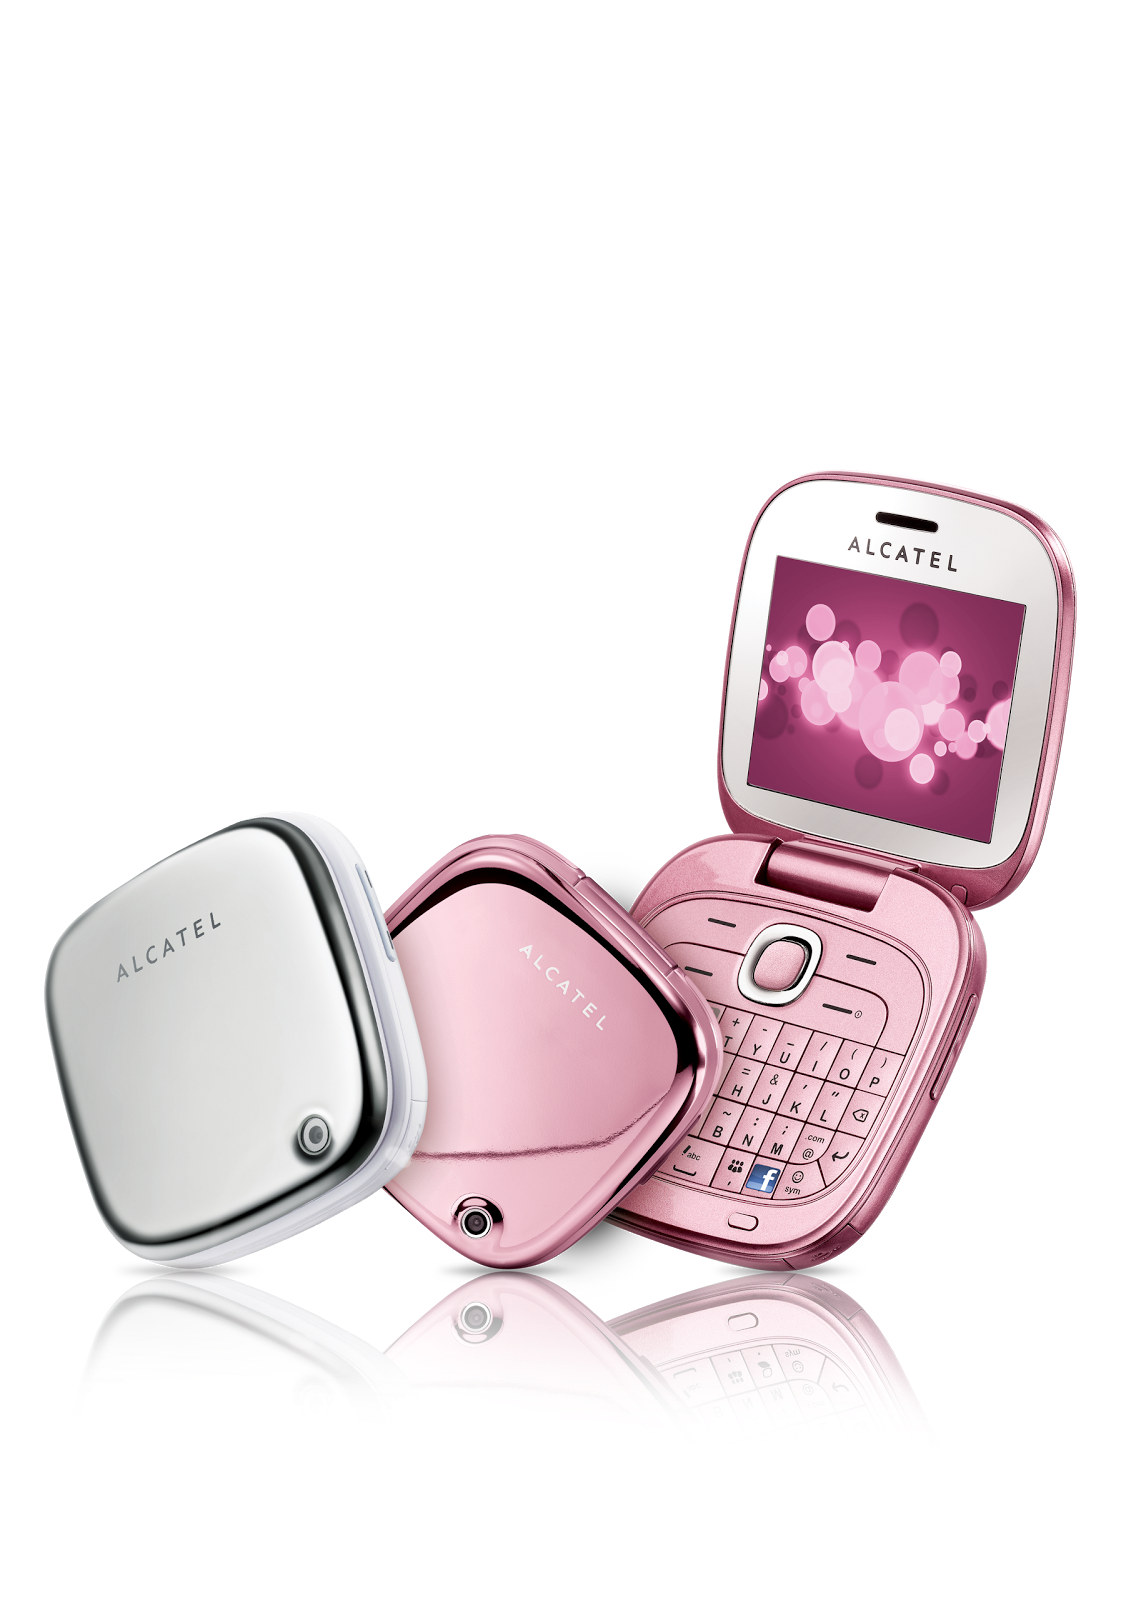 Розовые мобильные телефоны